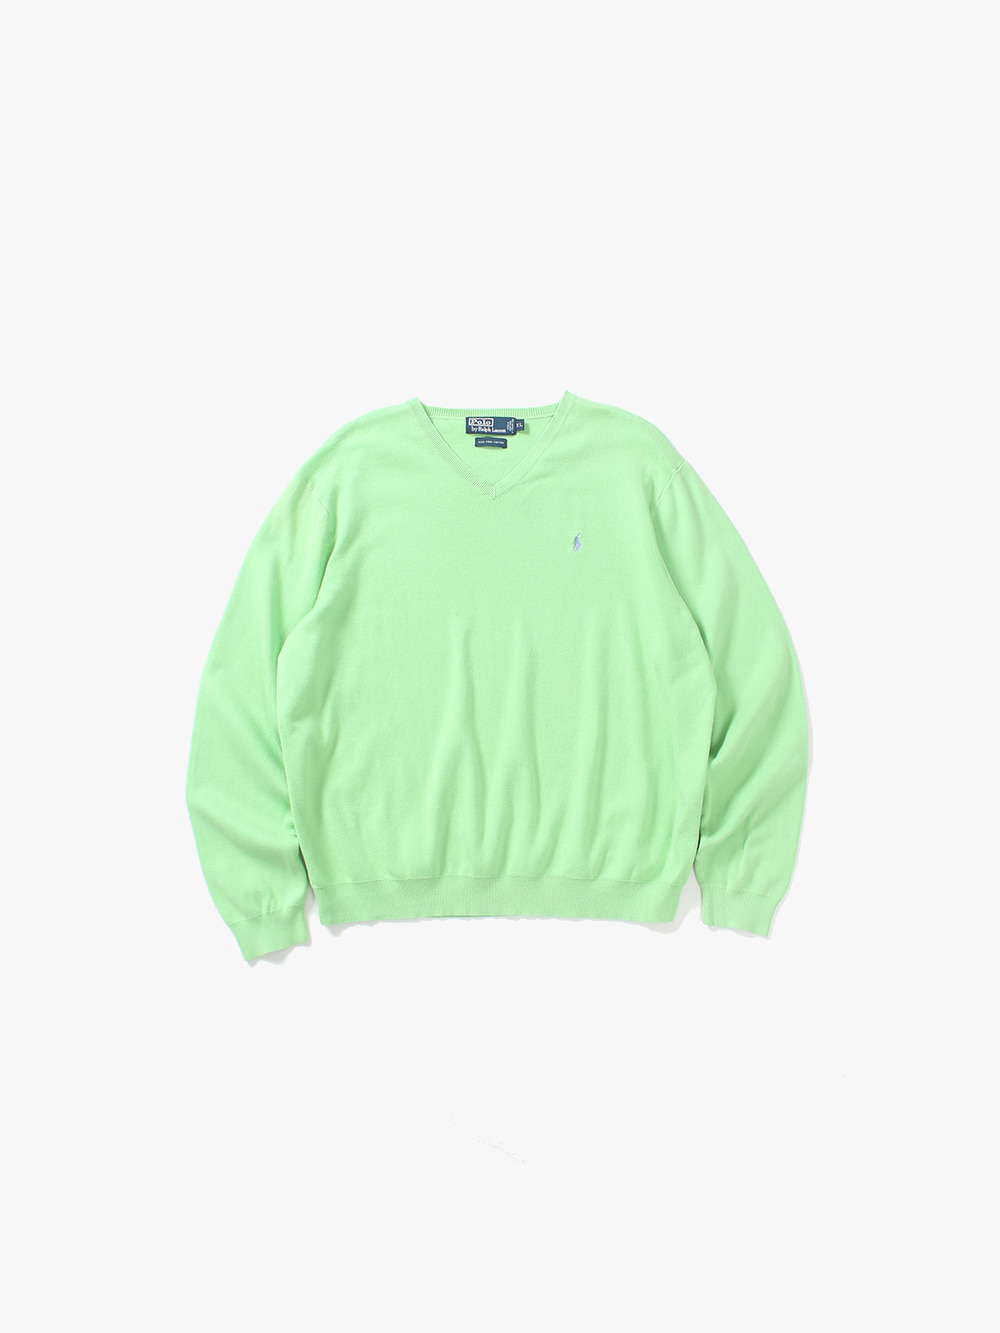 [ XL ] Polo Ralph Lauren Sweater (6275)